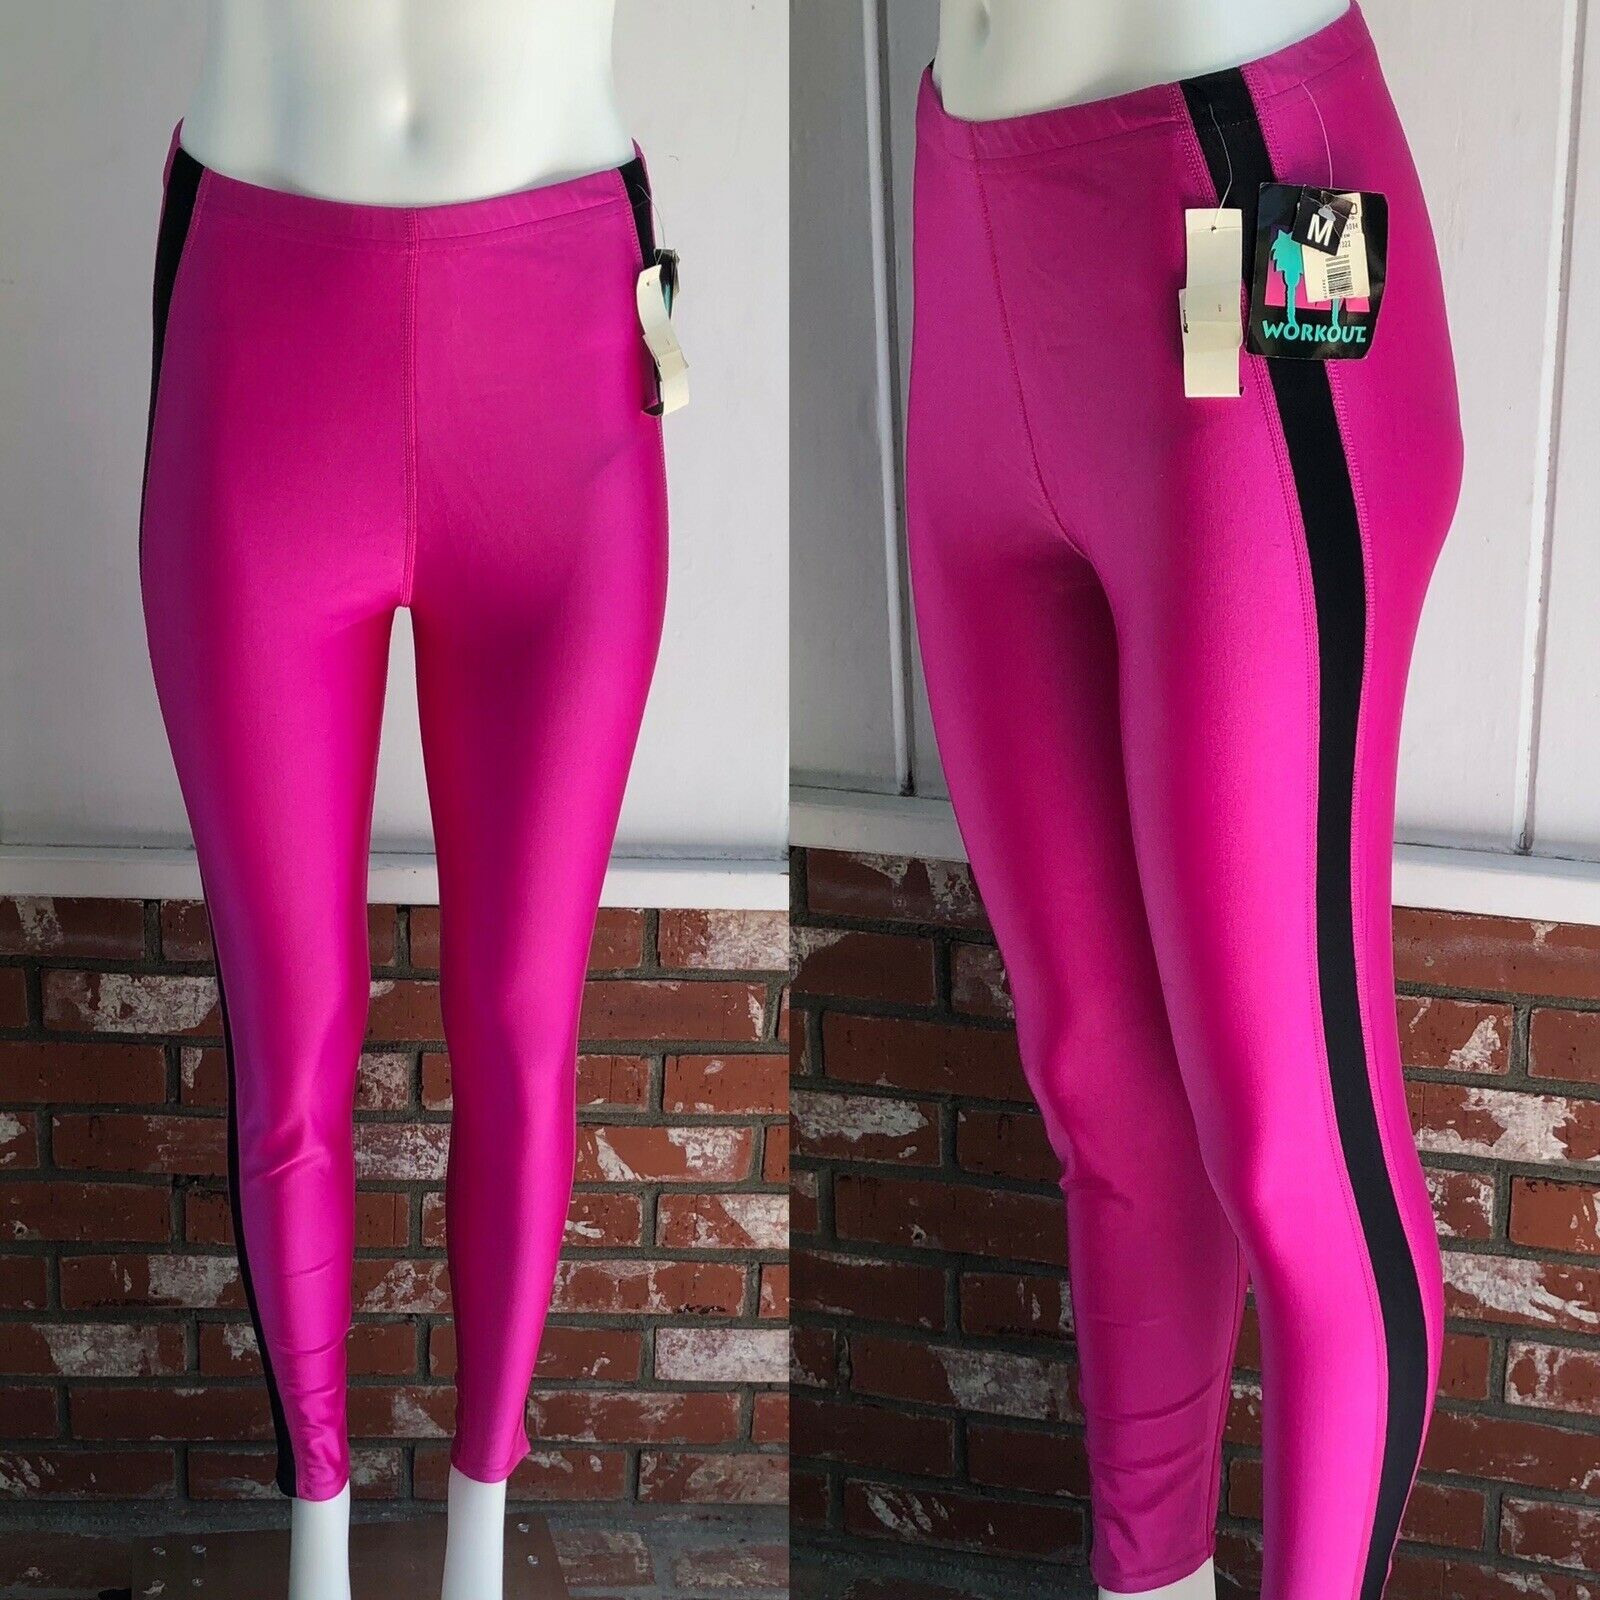 Vtg 80s La Workout Neon Hot Pink Black Stripe Shiny Spandex Leggings W/ Tag M